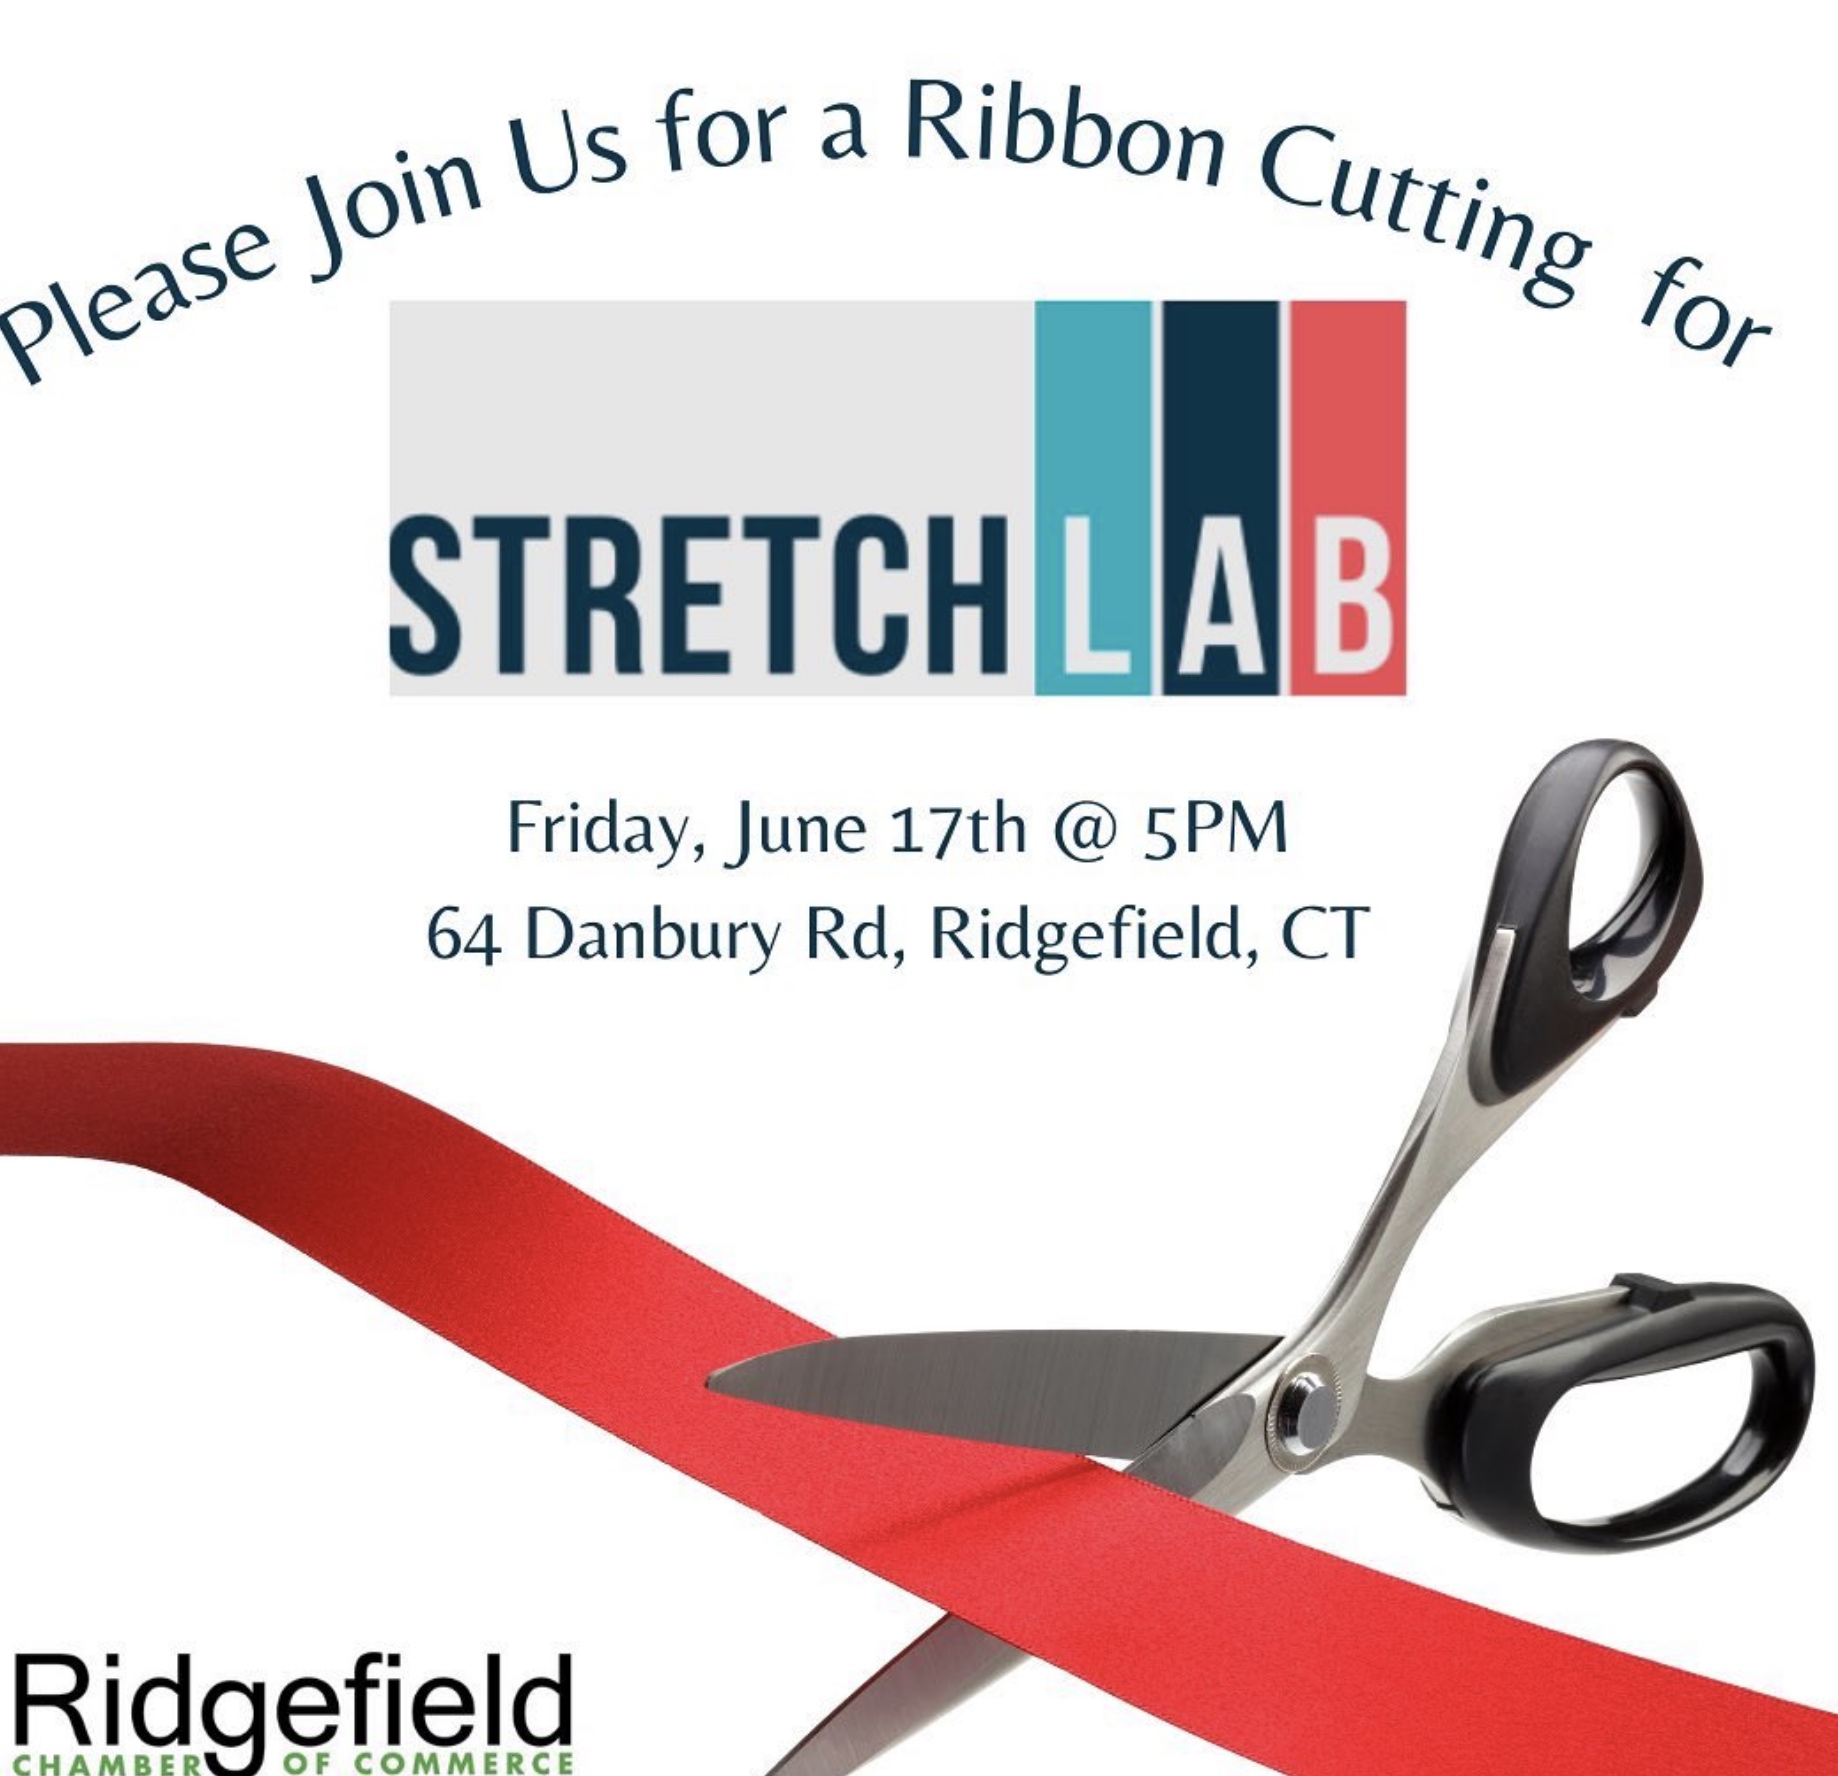 Stretch Lab Ribbon Cutting Ridgefield Chamber